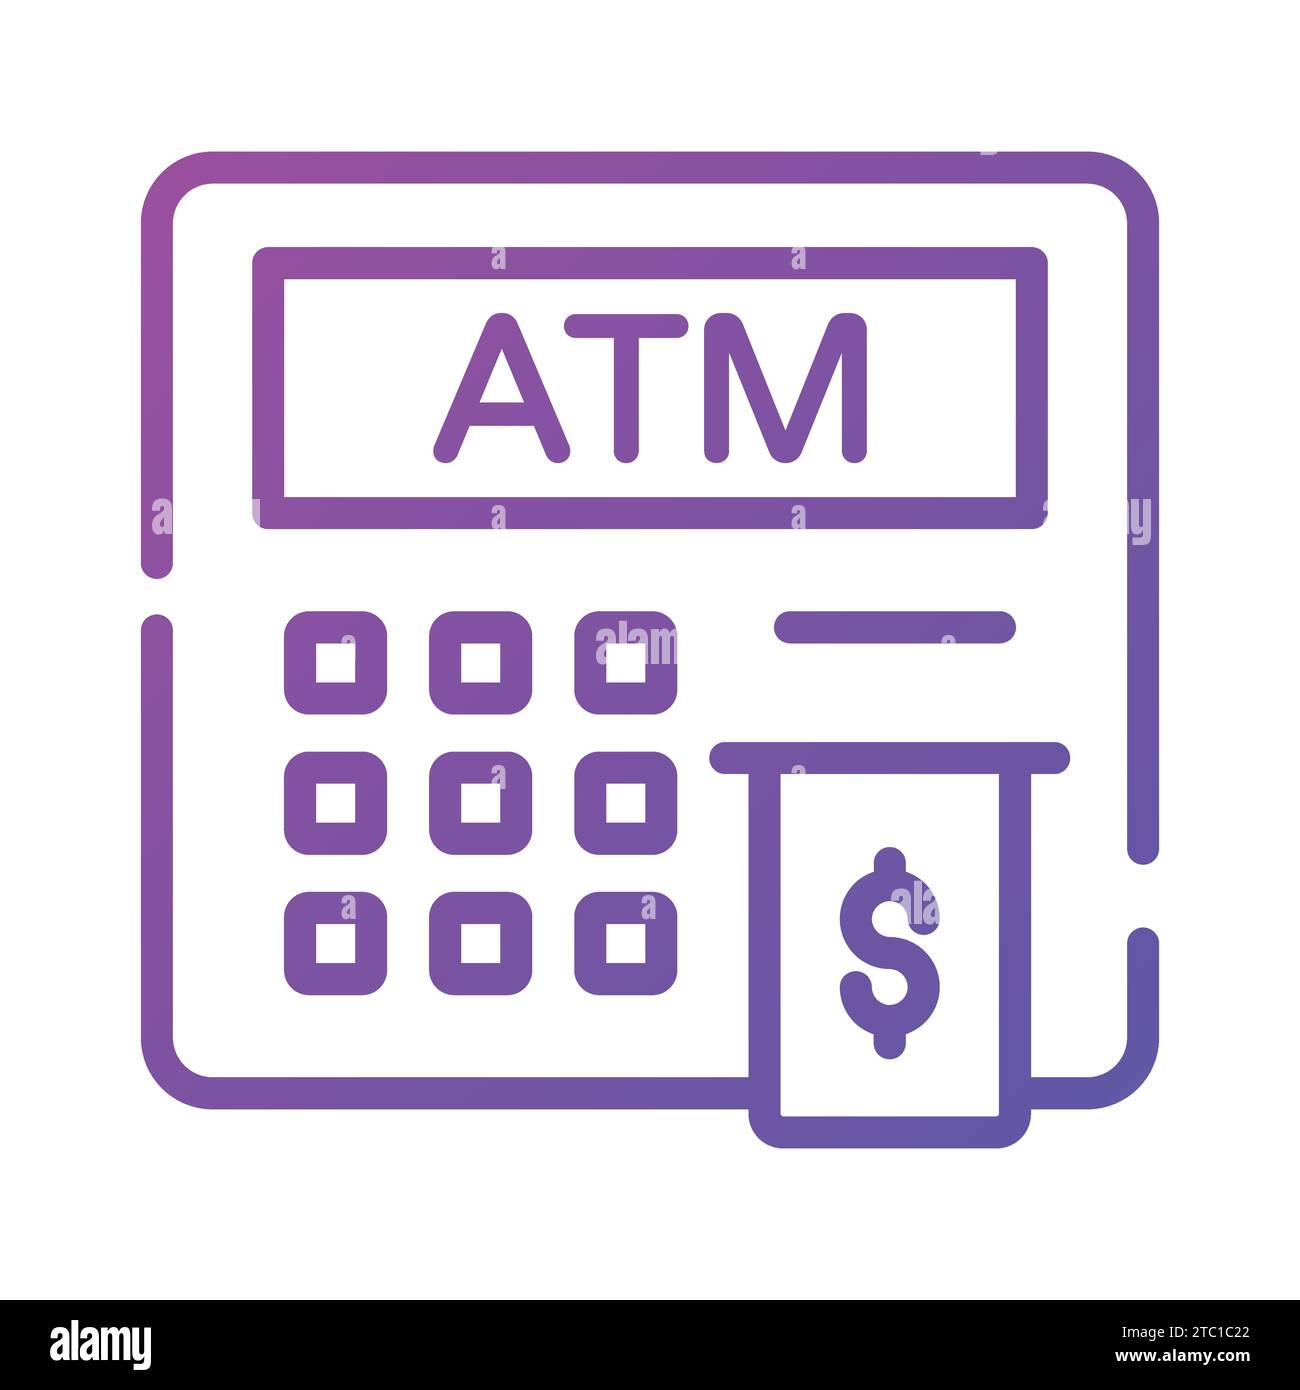 Un design iconico di Instant banking, distributore di contanti piatto e bancomat. Illustrazione Vettoriale